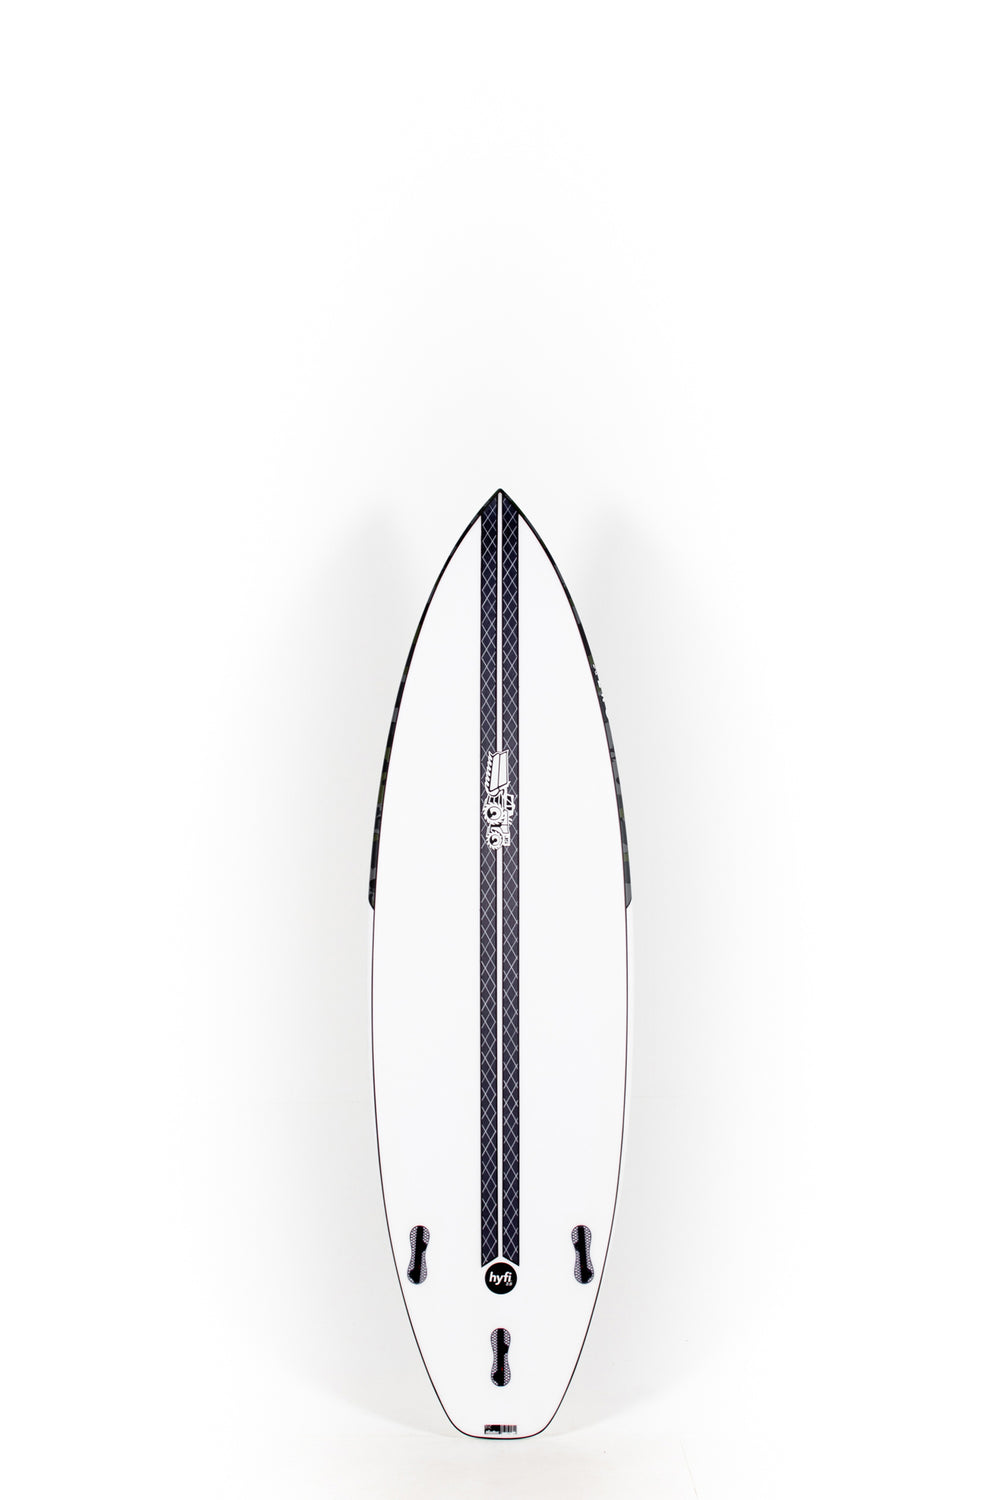 JS Surfboards - XERO HYFI - 6'0